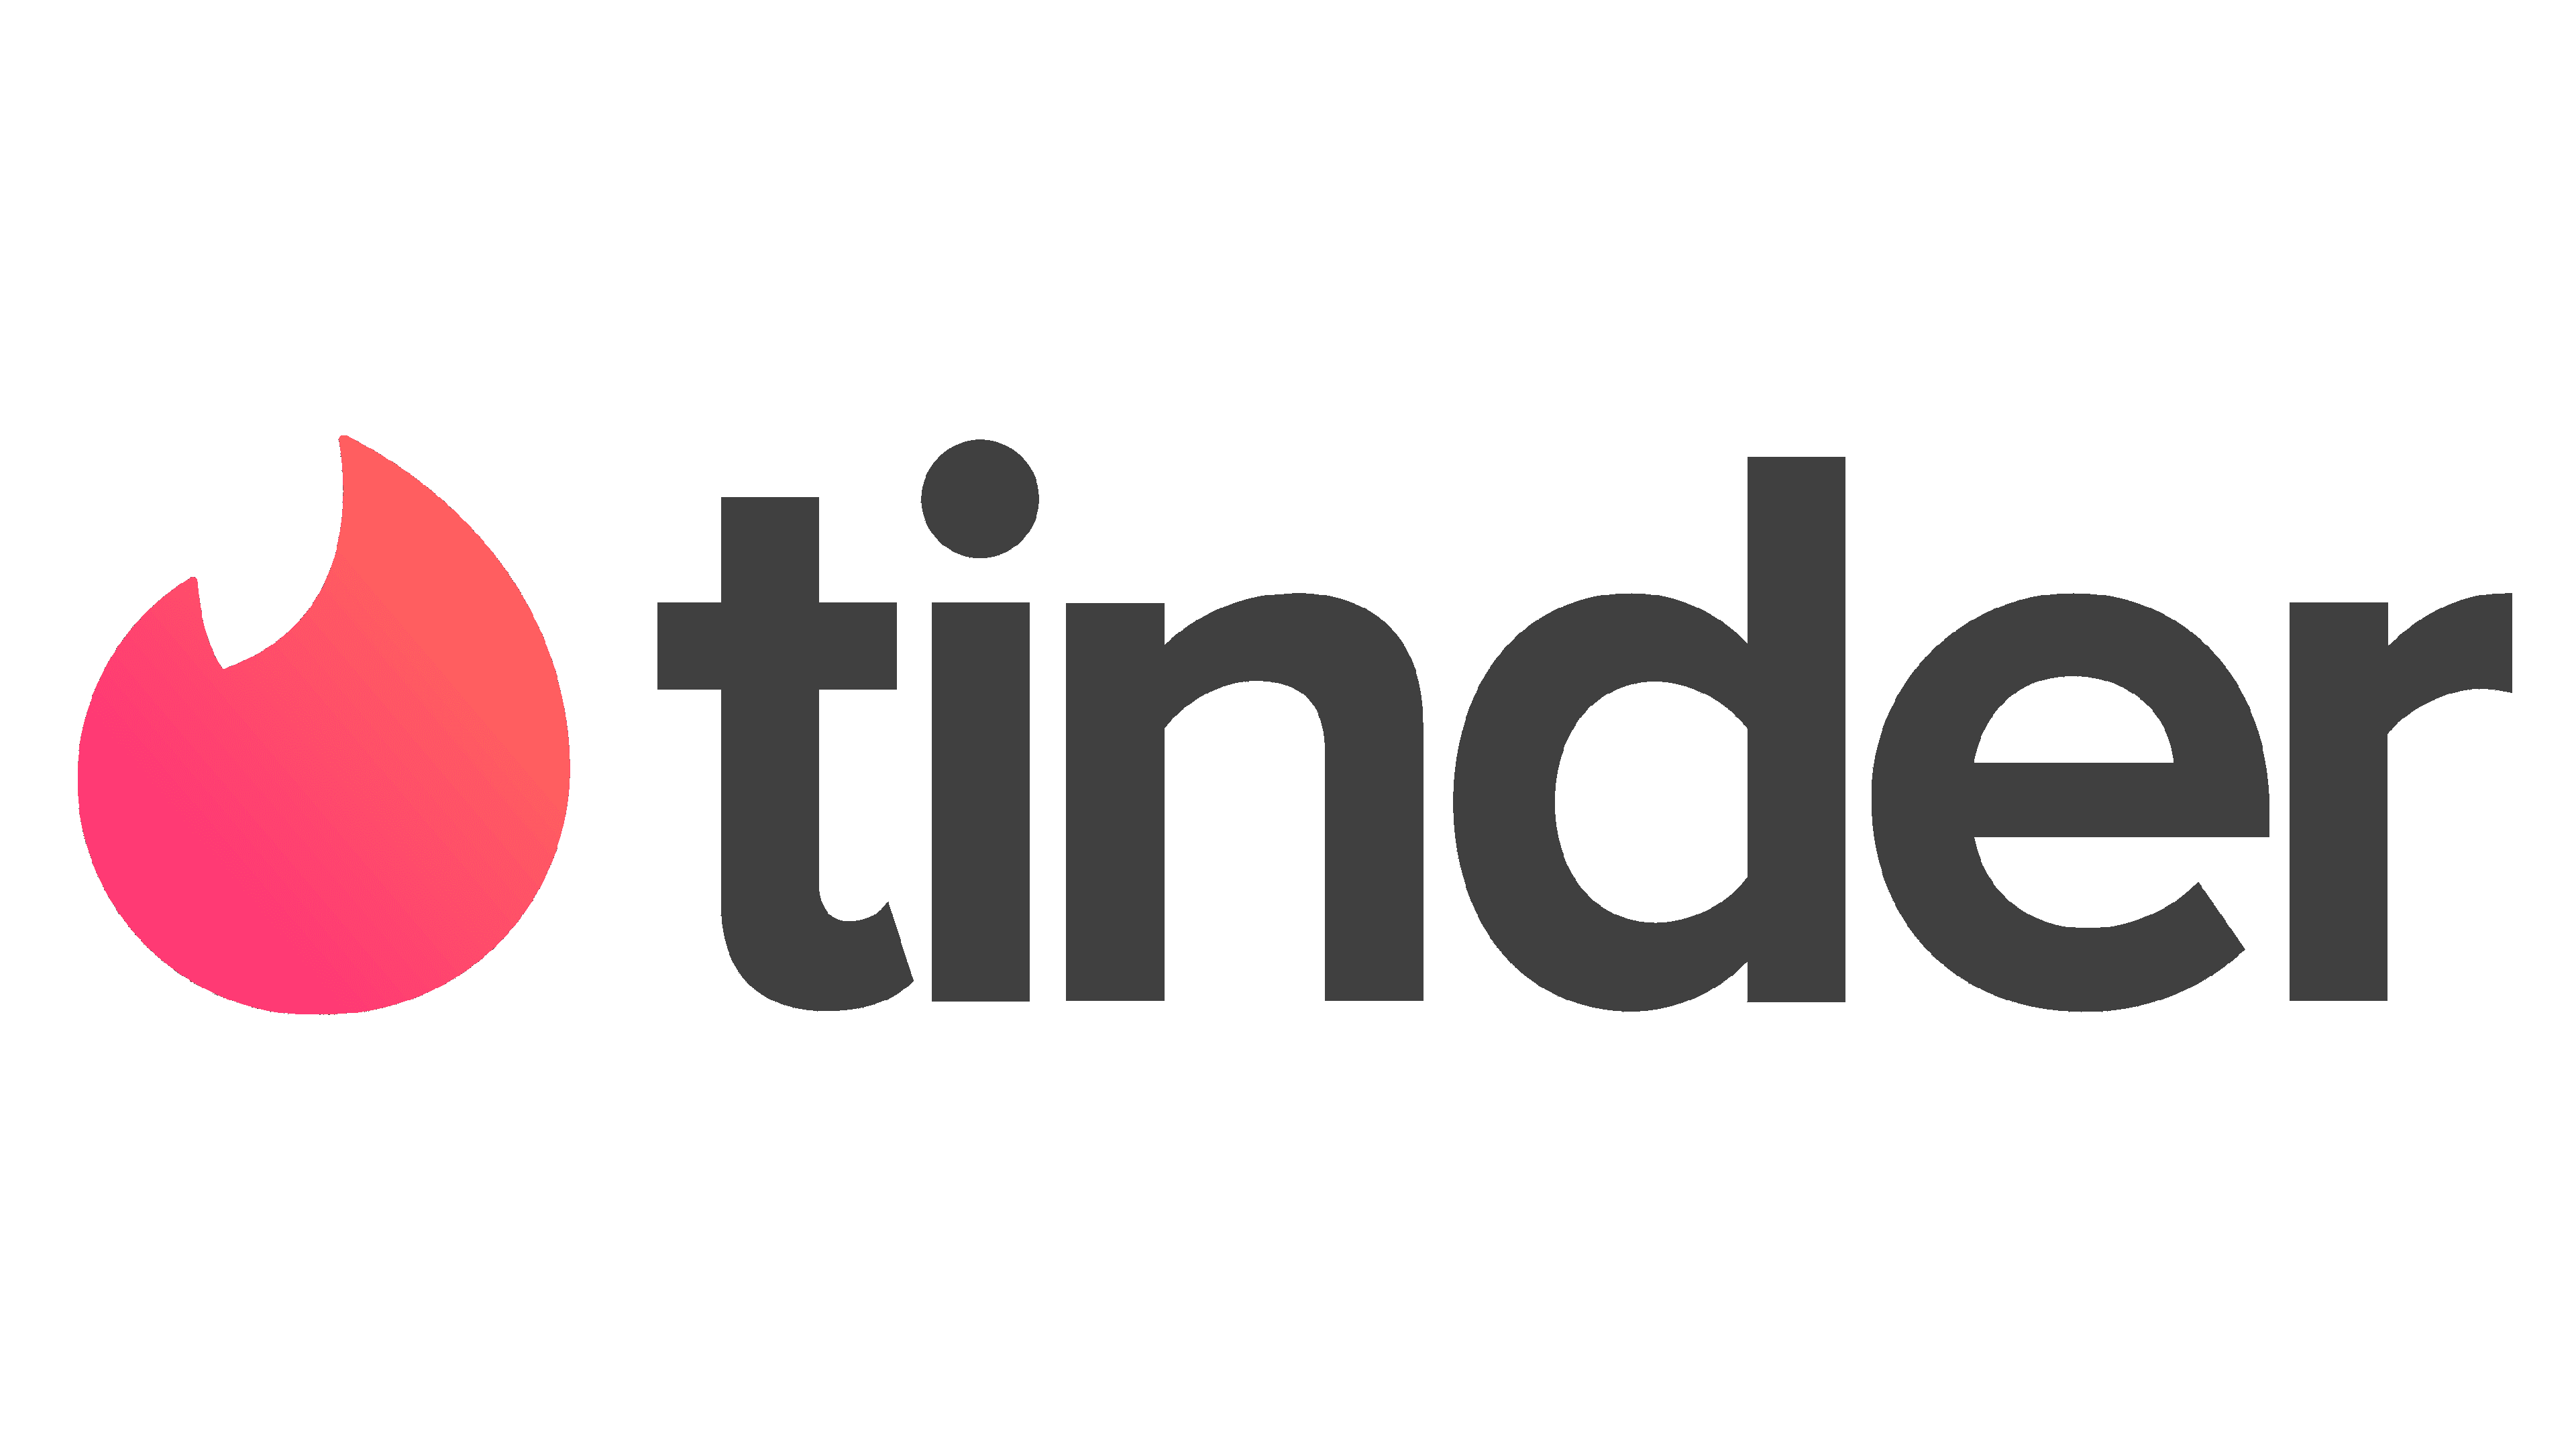 Tinder Logo Logo